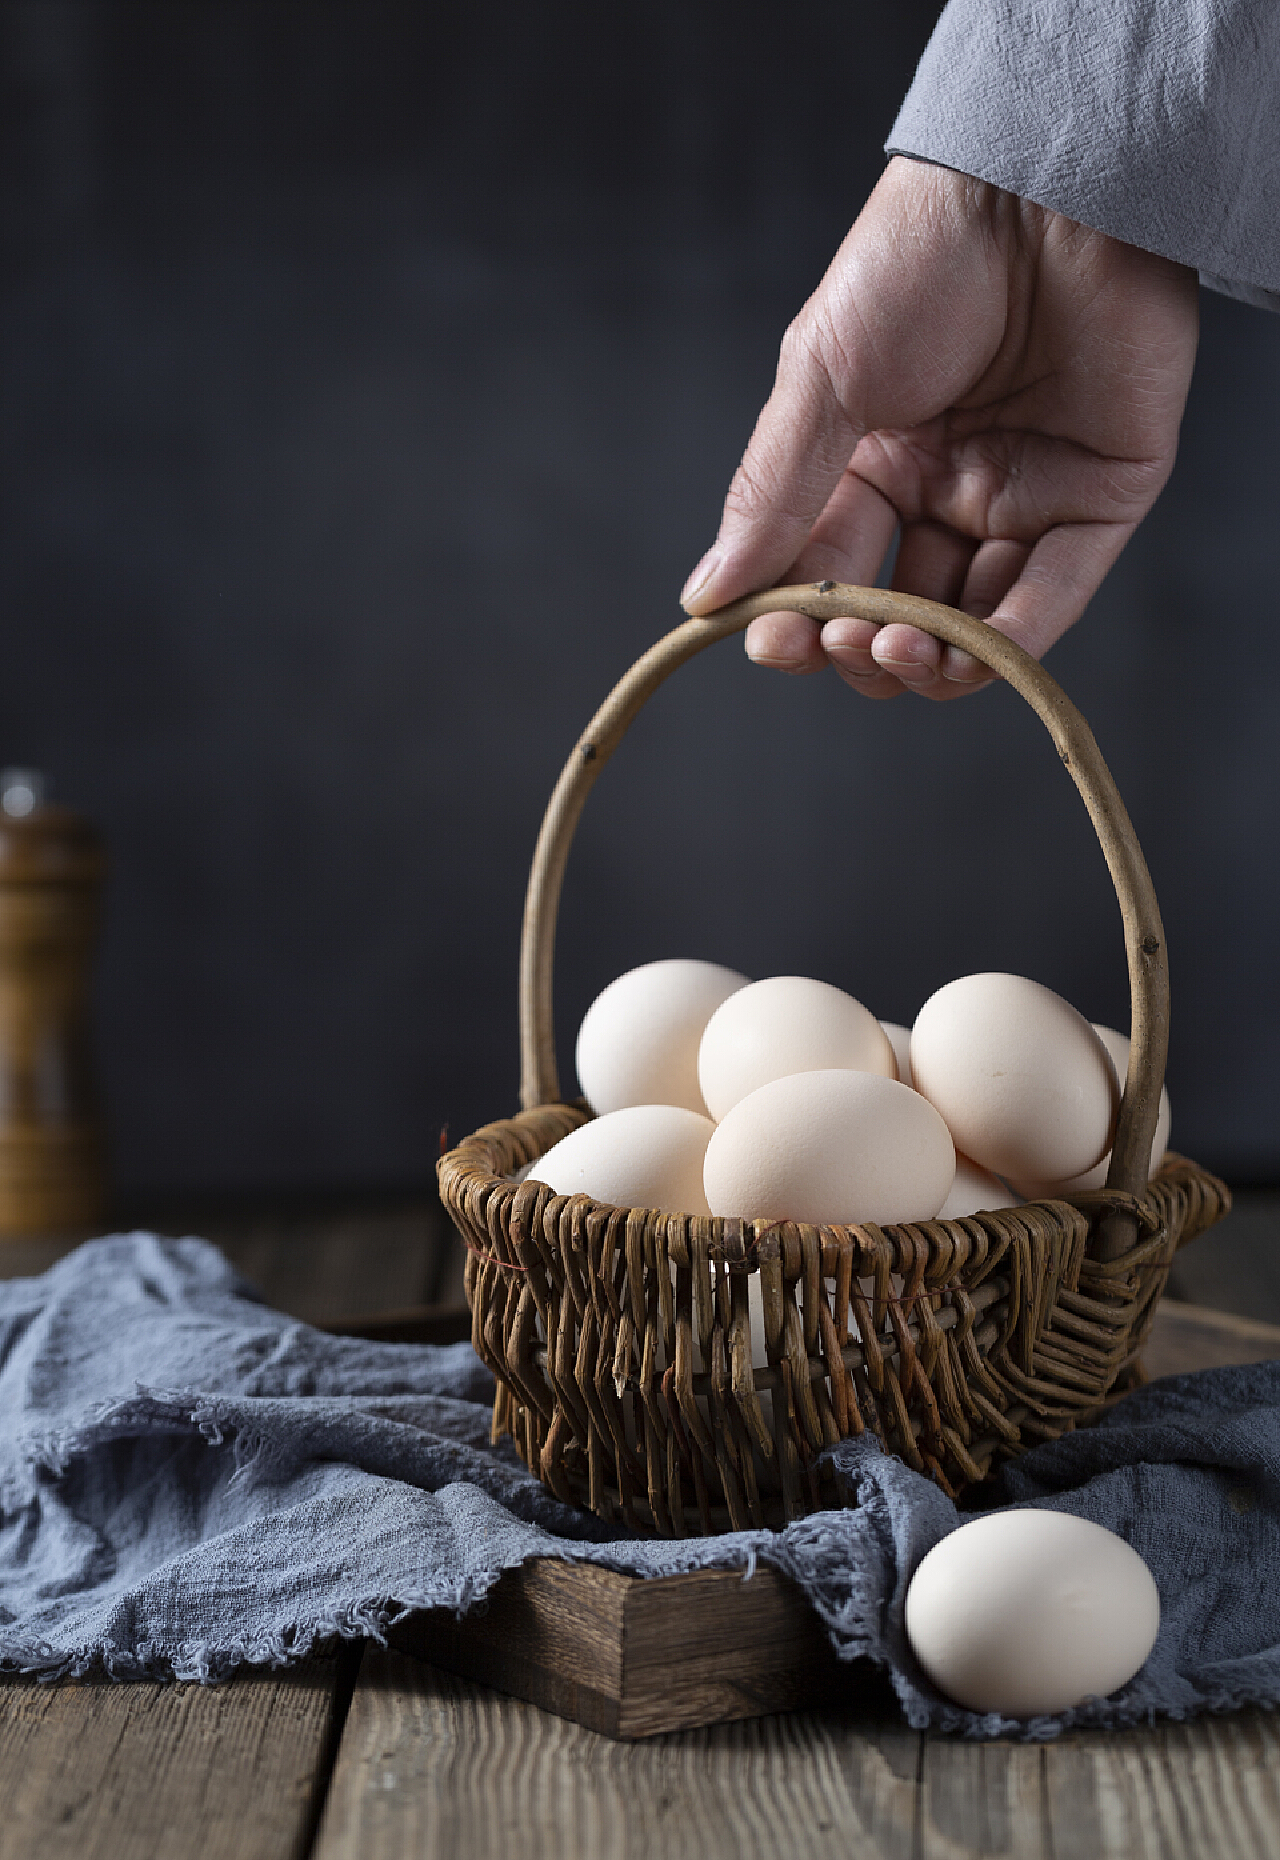 煎鹅蛋,煎鹅蛋的家常做法 - 美食杰煎鹅蛋做法大全